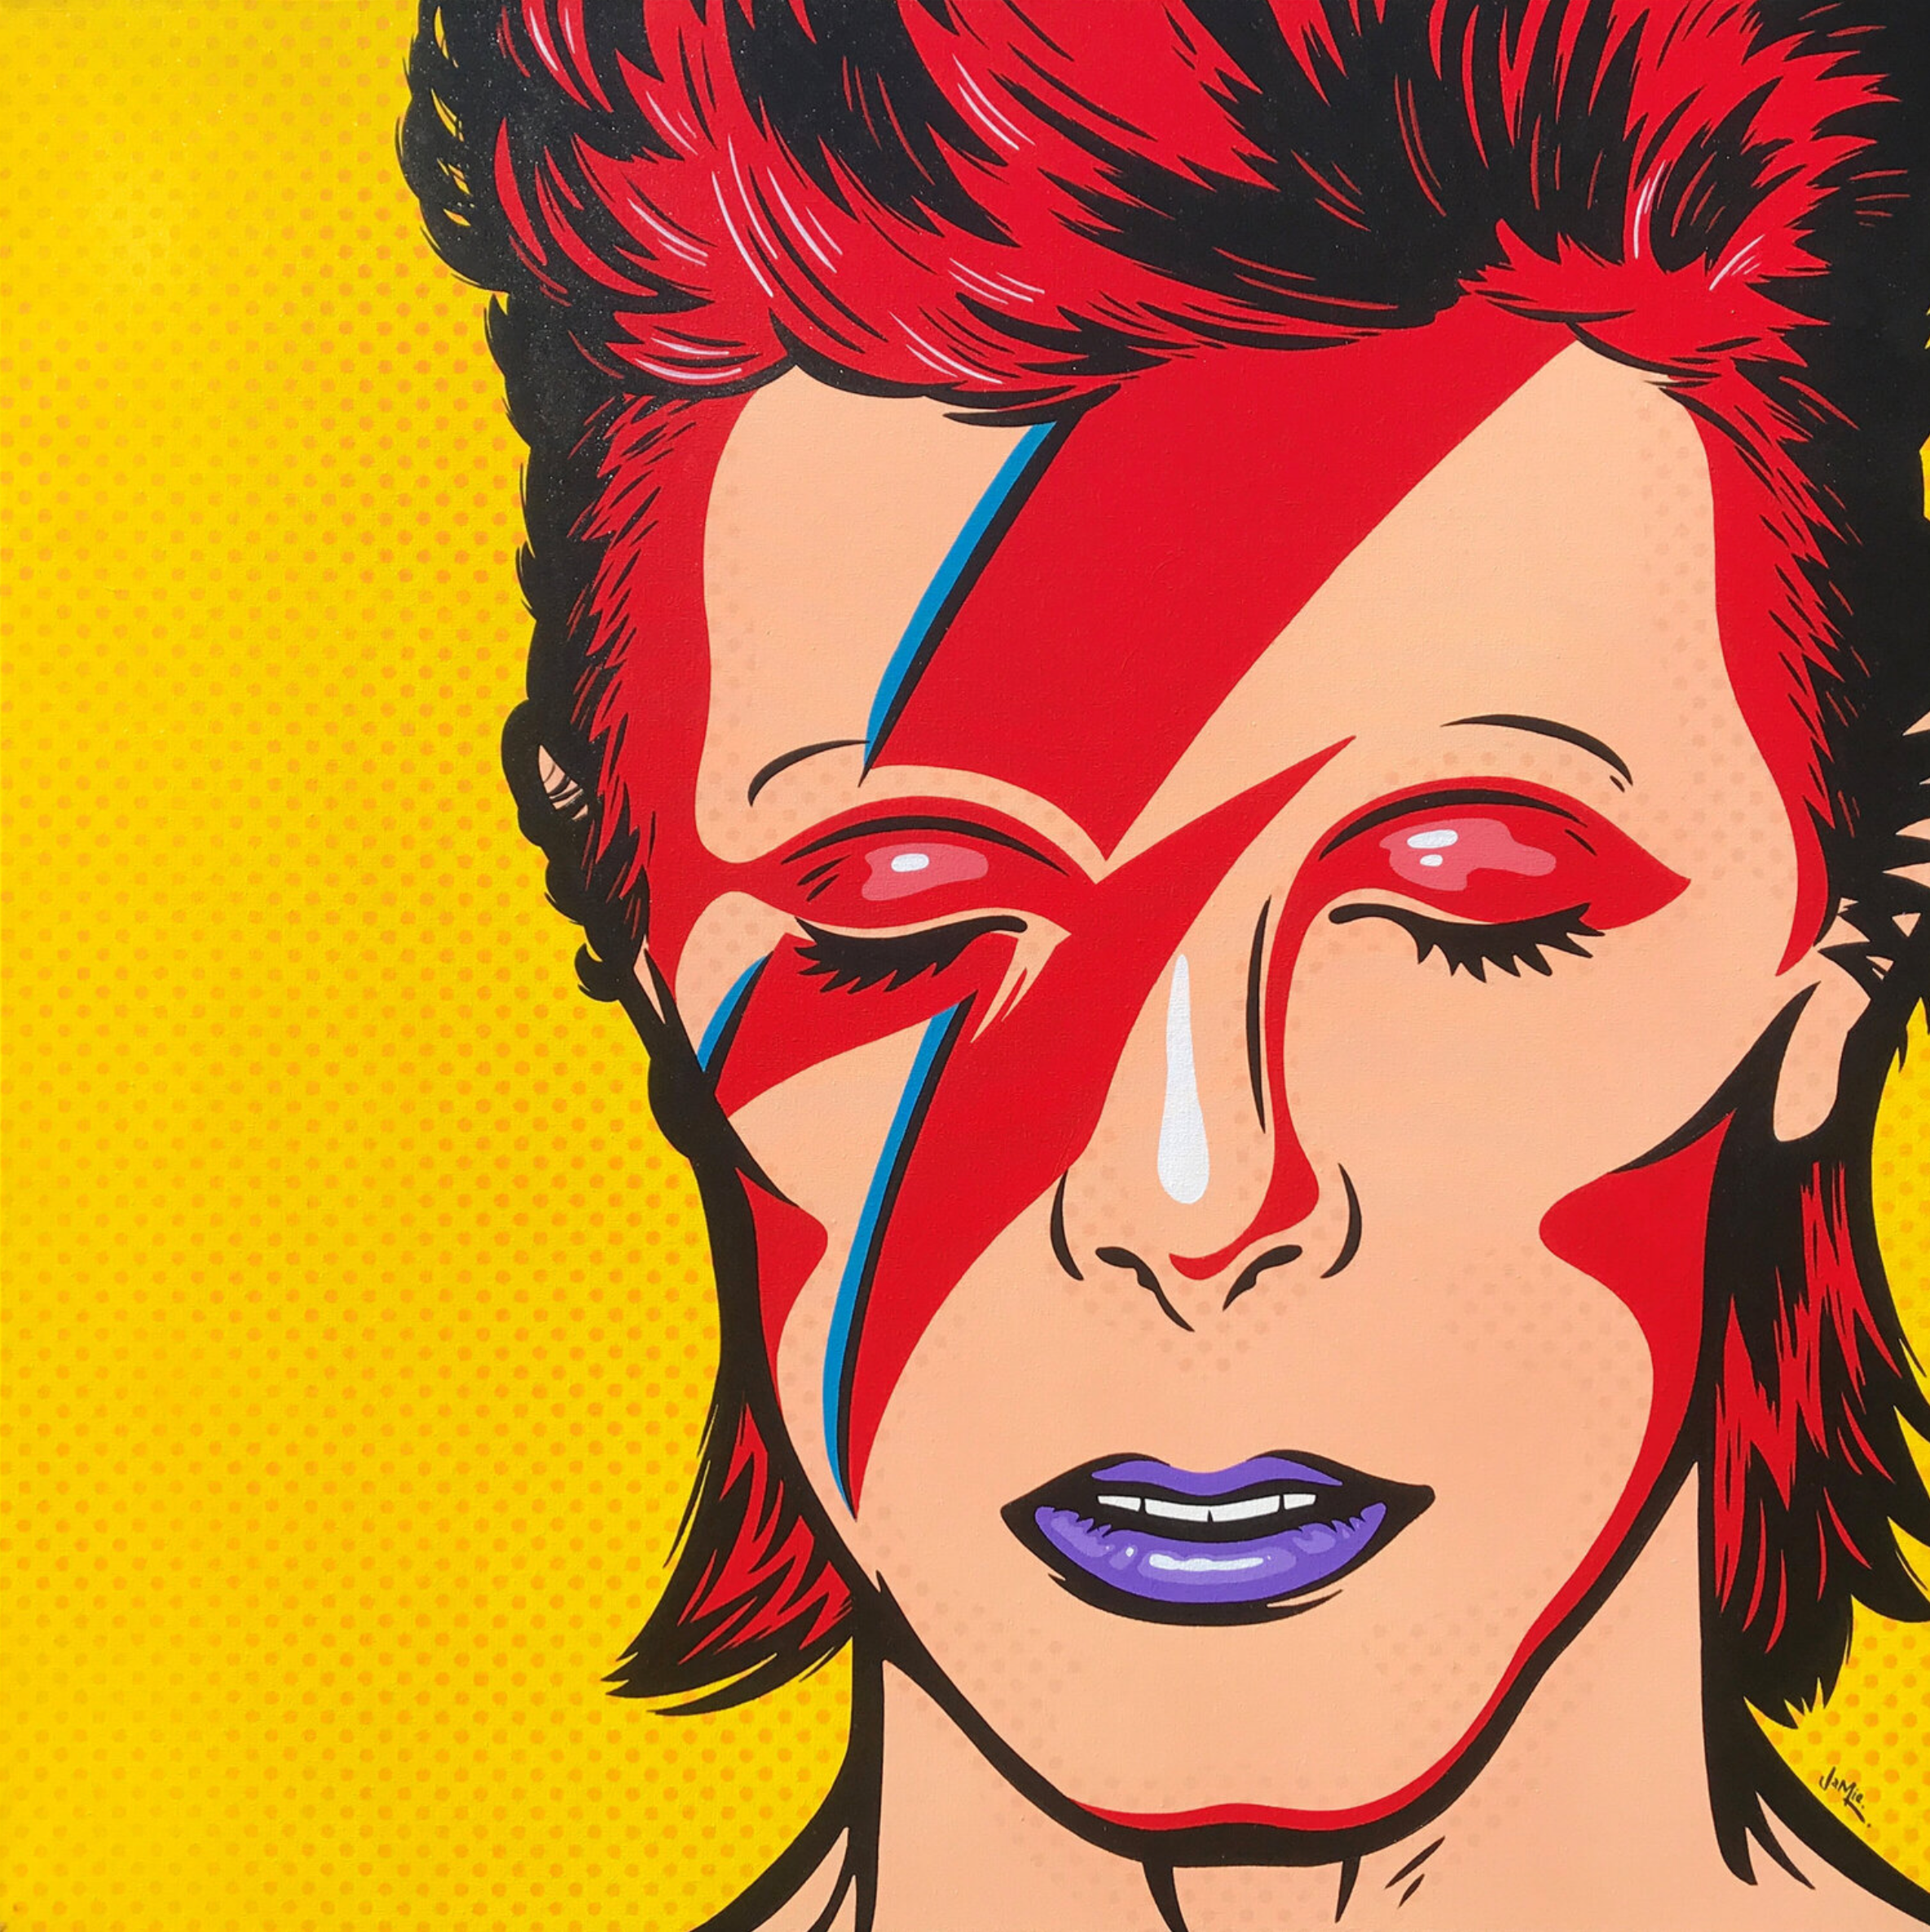 Quadro pop art "David Bowie" di Jamie Lee in stile fumetto con disegno originale. David Bowie come Aladdin Sane su uno sfondo giallo. Versione pop art in stile fumetto dipinta a mano della leggendaria immagine di copertina dell'album.